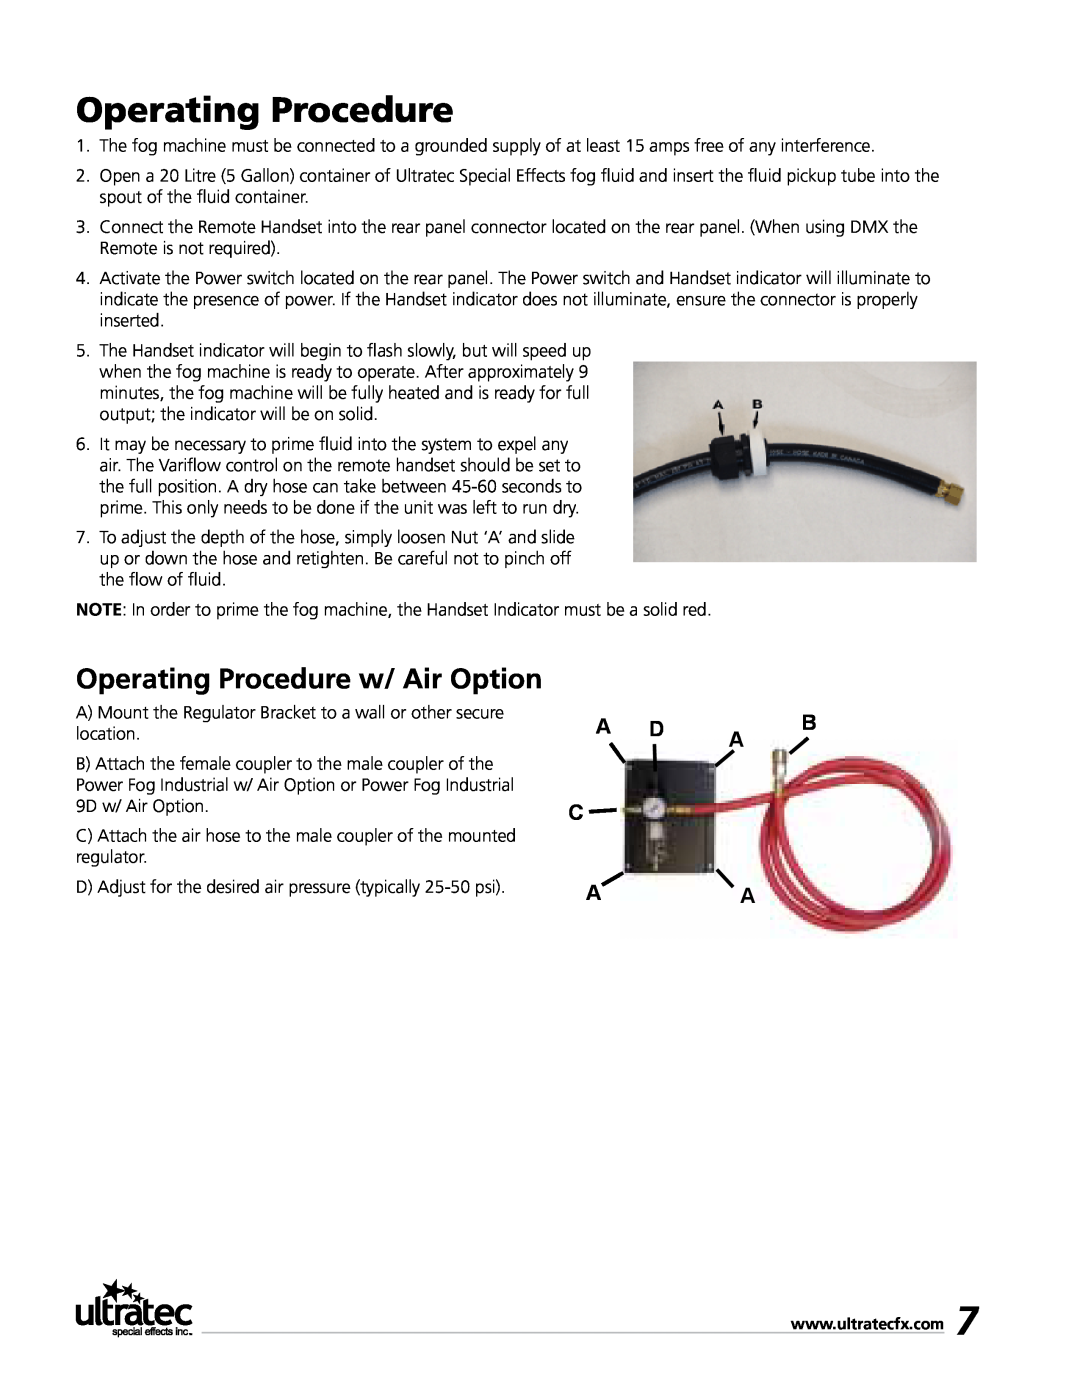 Ultratec PFI-9D manual Operating Procedure w/ Air Option, A D A B C A A 